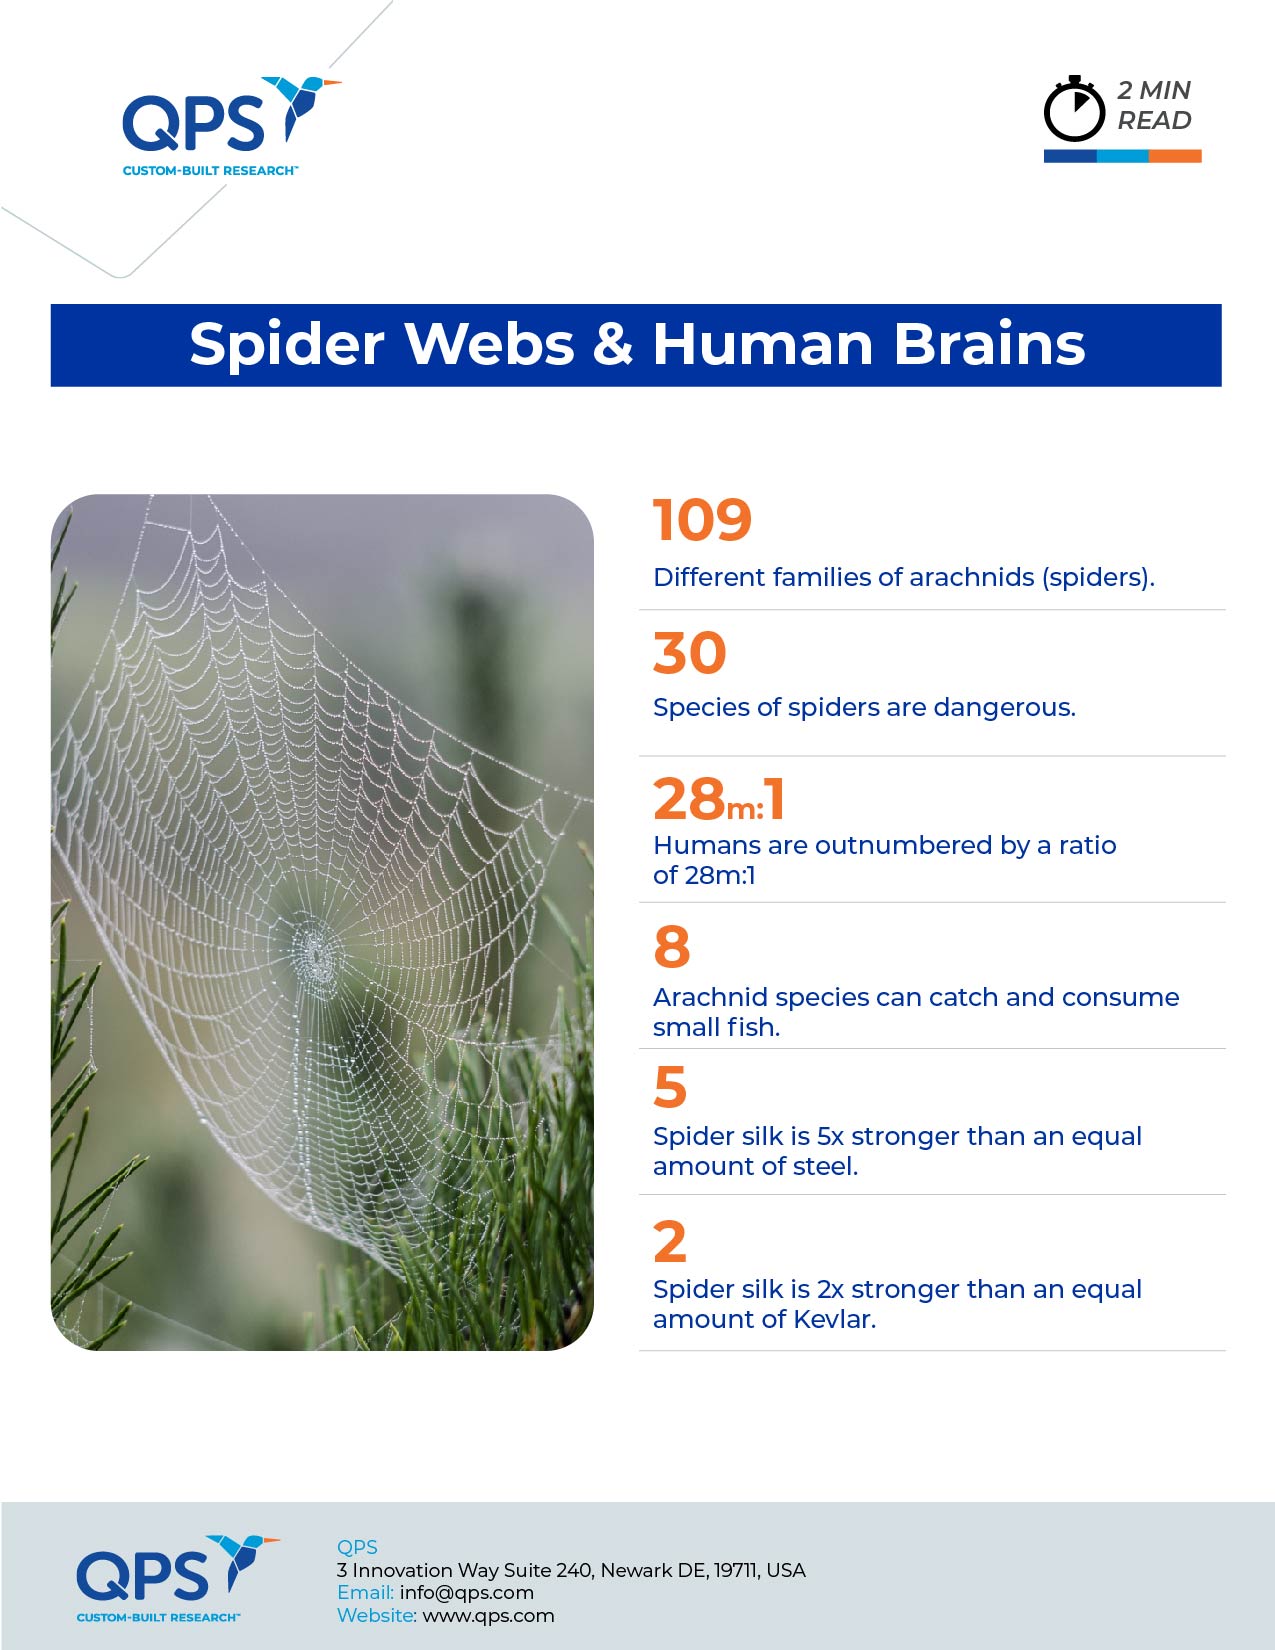 Spider webs & Human Brain